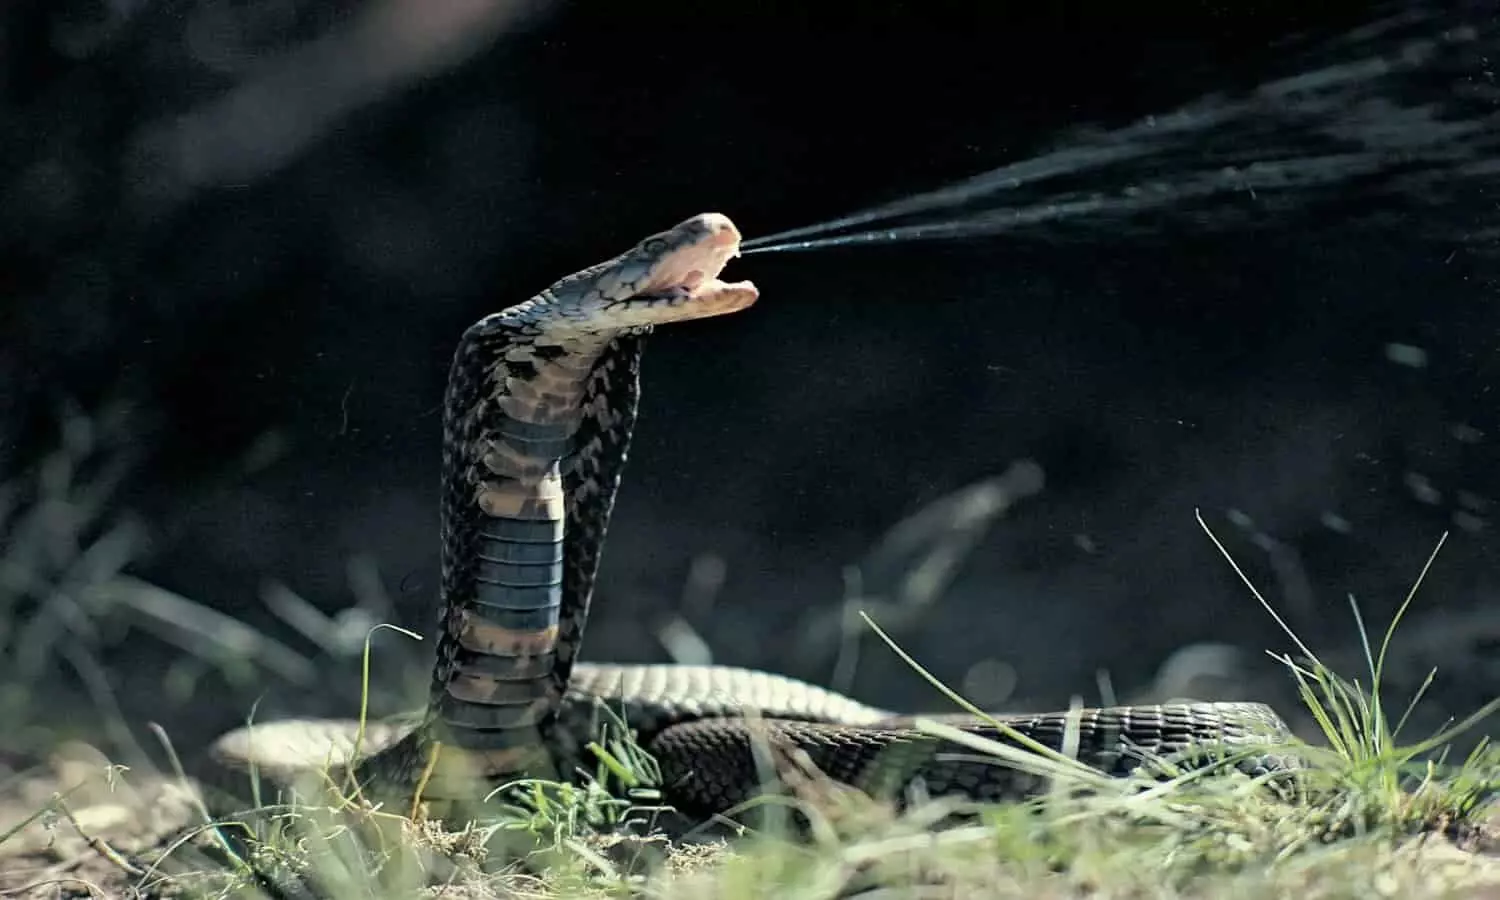 Deadliest Snakes In The World: ये हैं दुनिया के 5 सबसे जहरीले सांप, 2 मीटर दूर से फेंकता है जहर, डस ले तो बचना मुश्किल